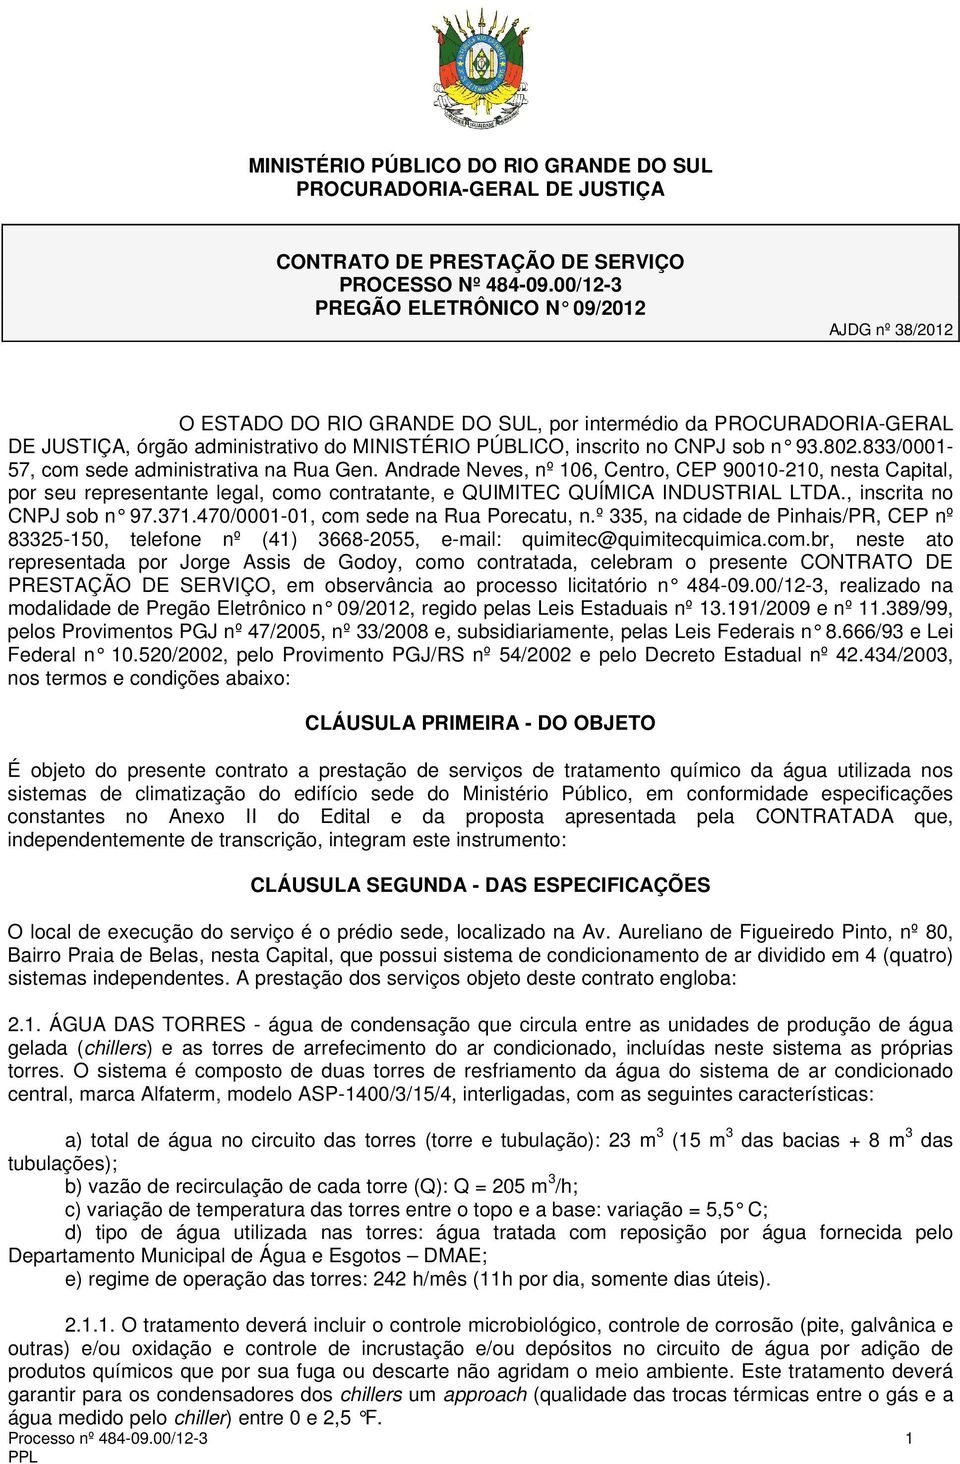 93.802.833/0001-57, com sede administrativa na Rua Gen. Andrade Neves, nº 106, Centro, CEP 90010-210, nesta Capital, por seu representante legal, como contratante, e QUIMITEC QUÍMICA INDUSTRIAL LTDA.